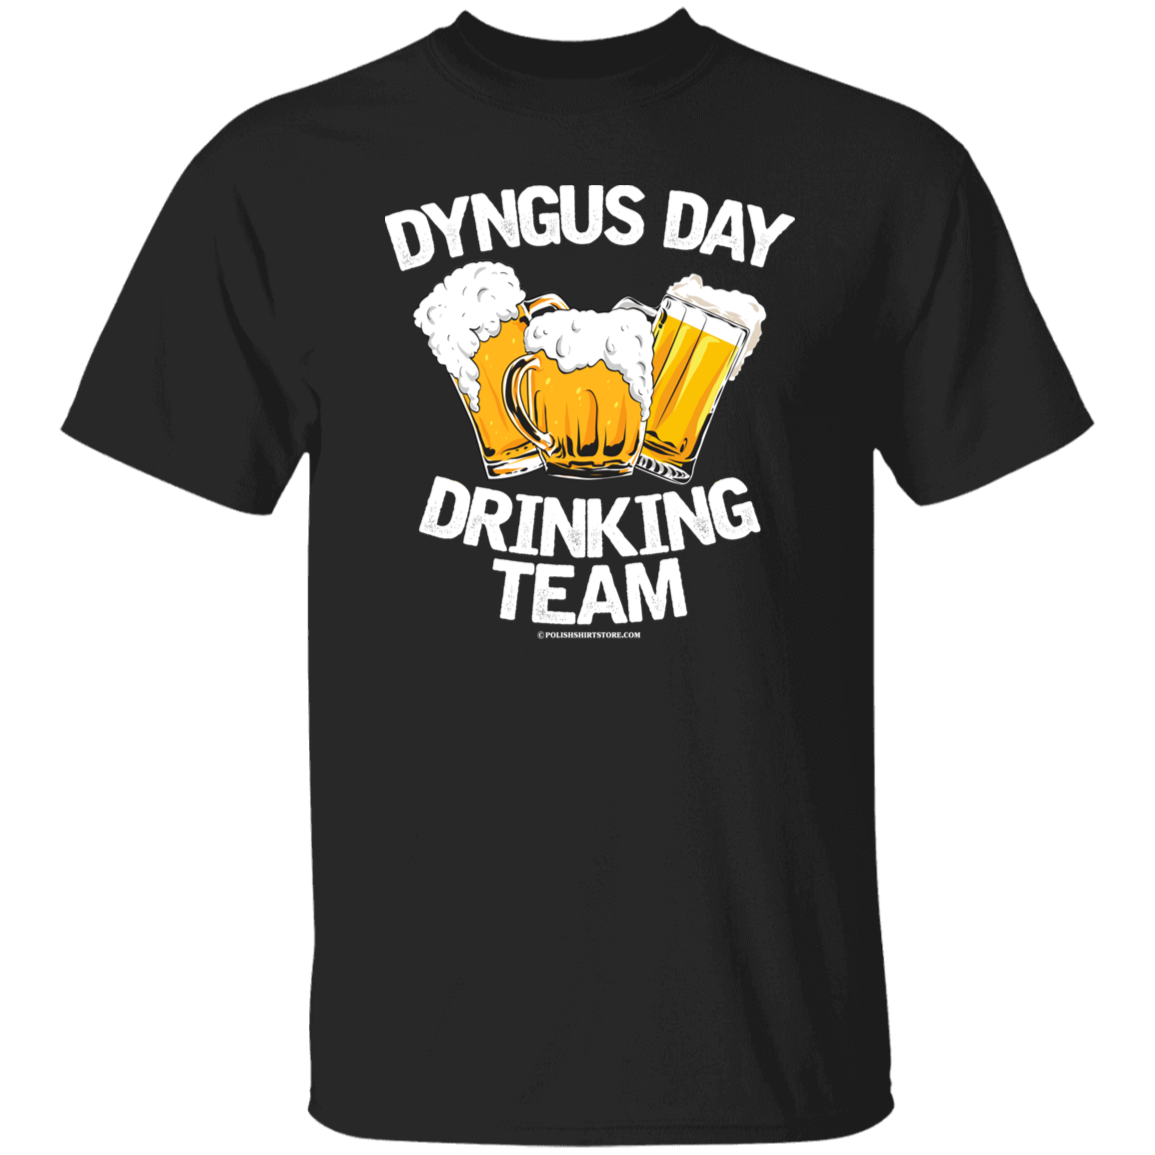 Dyngus Day - More cool Buffalo Bills Dyngus gear added.